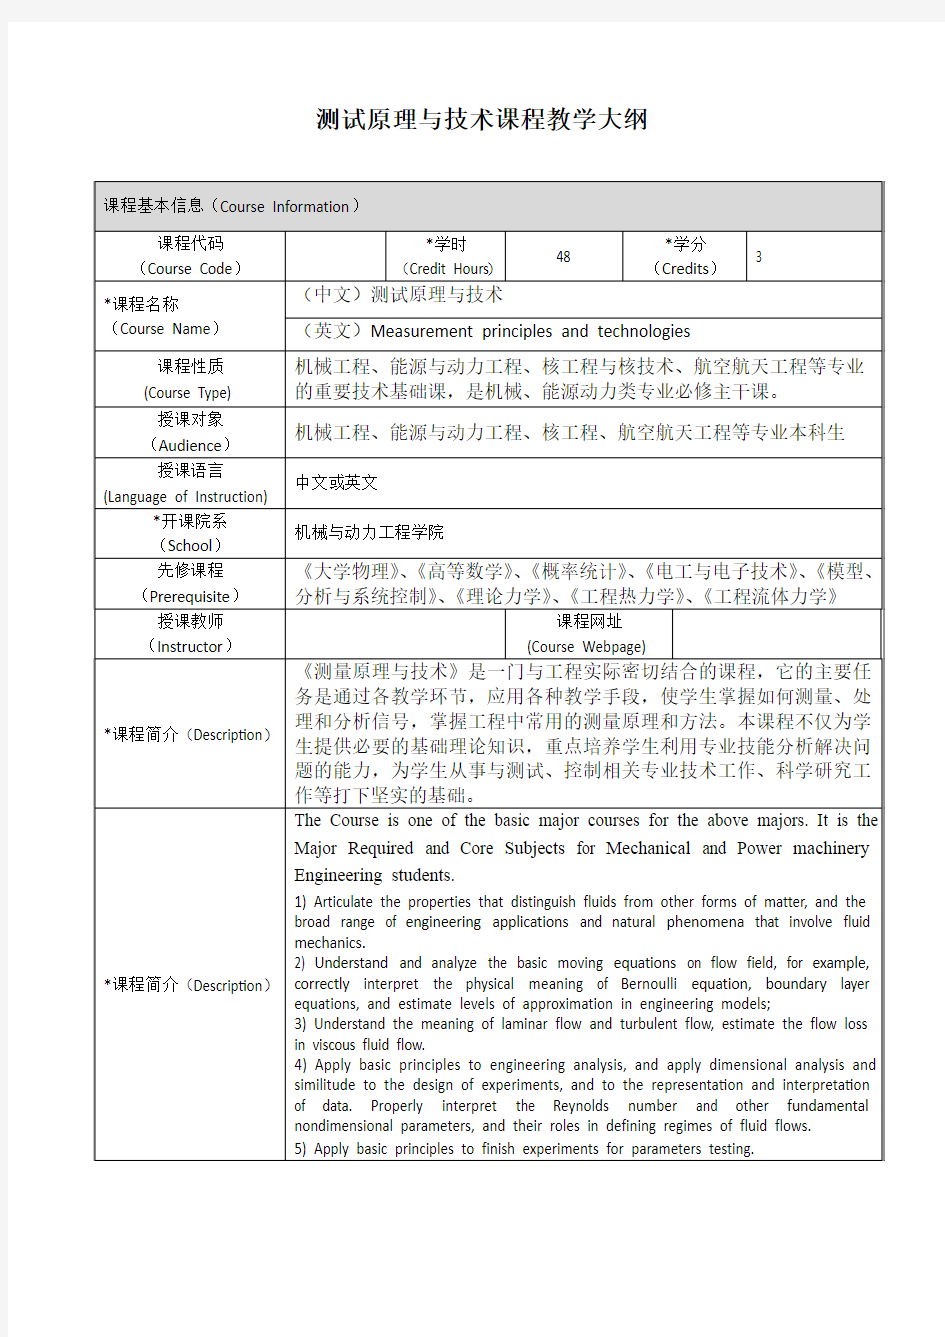 测试原理与技术课程教学大纲-上海交通大学